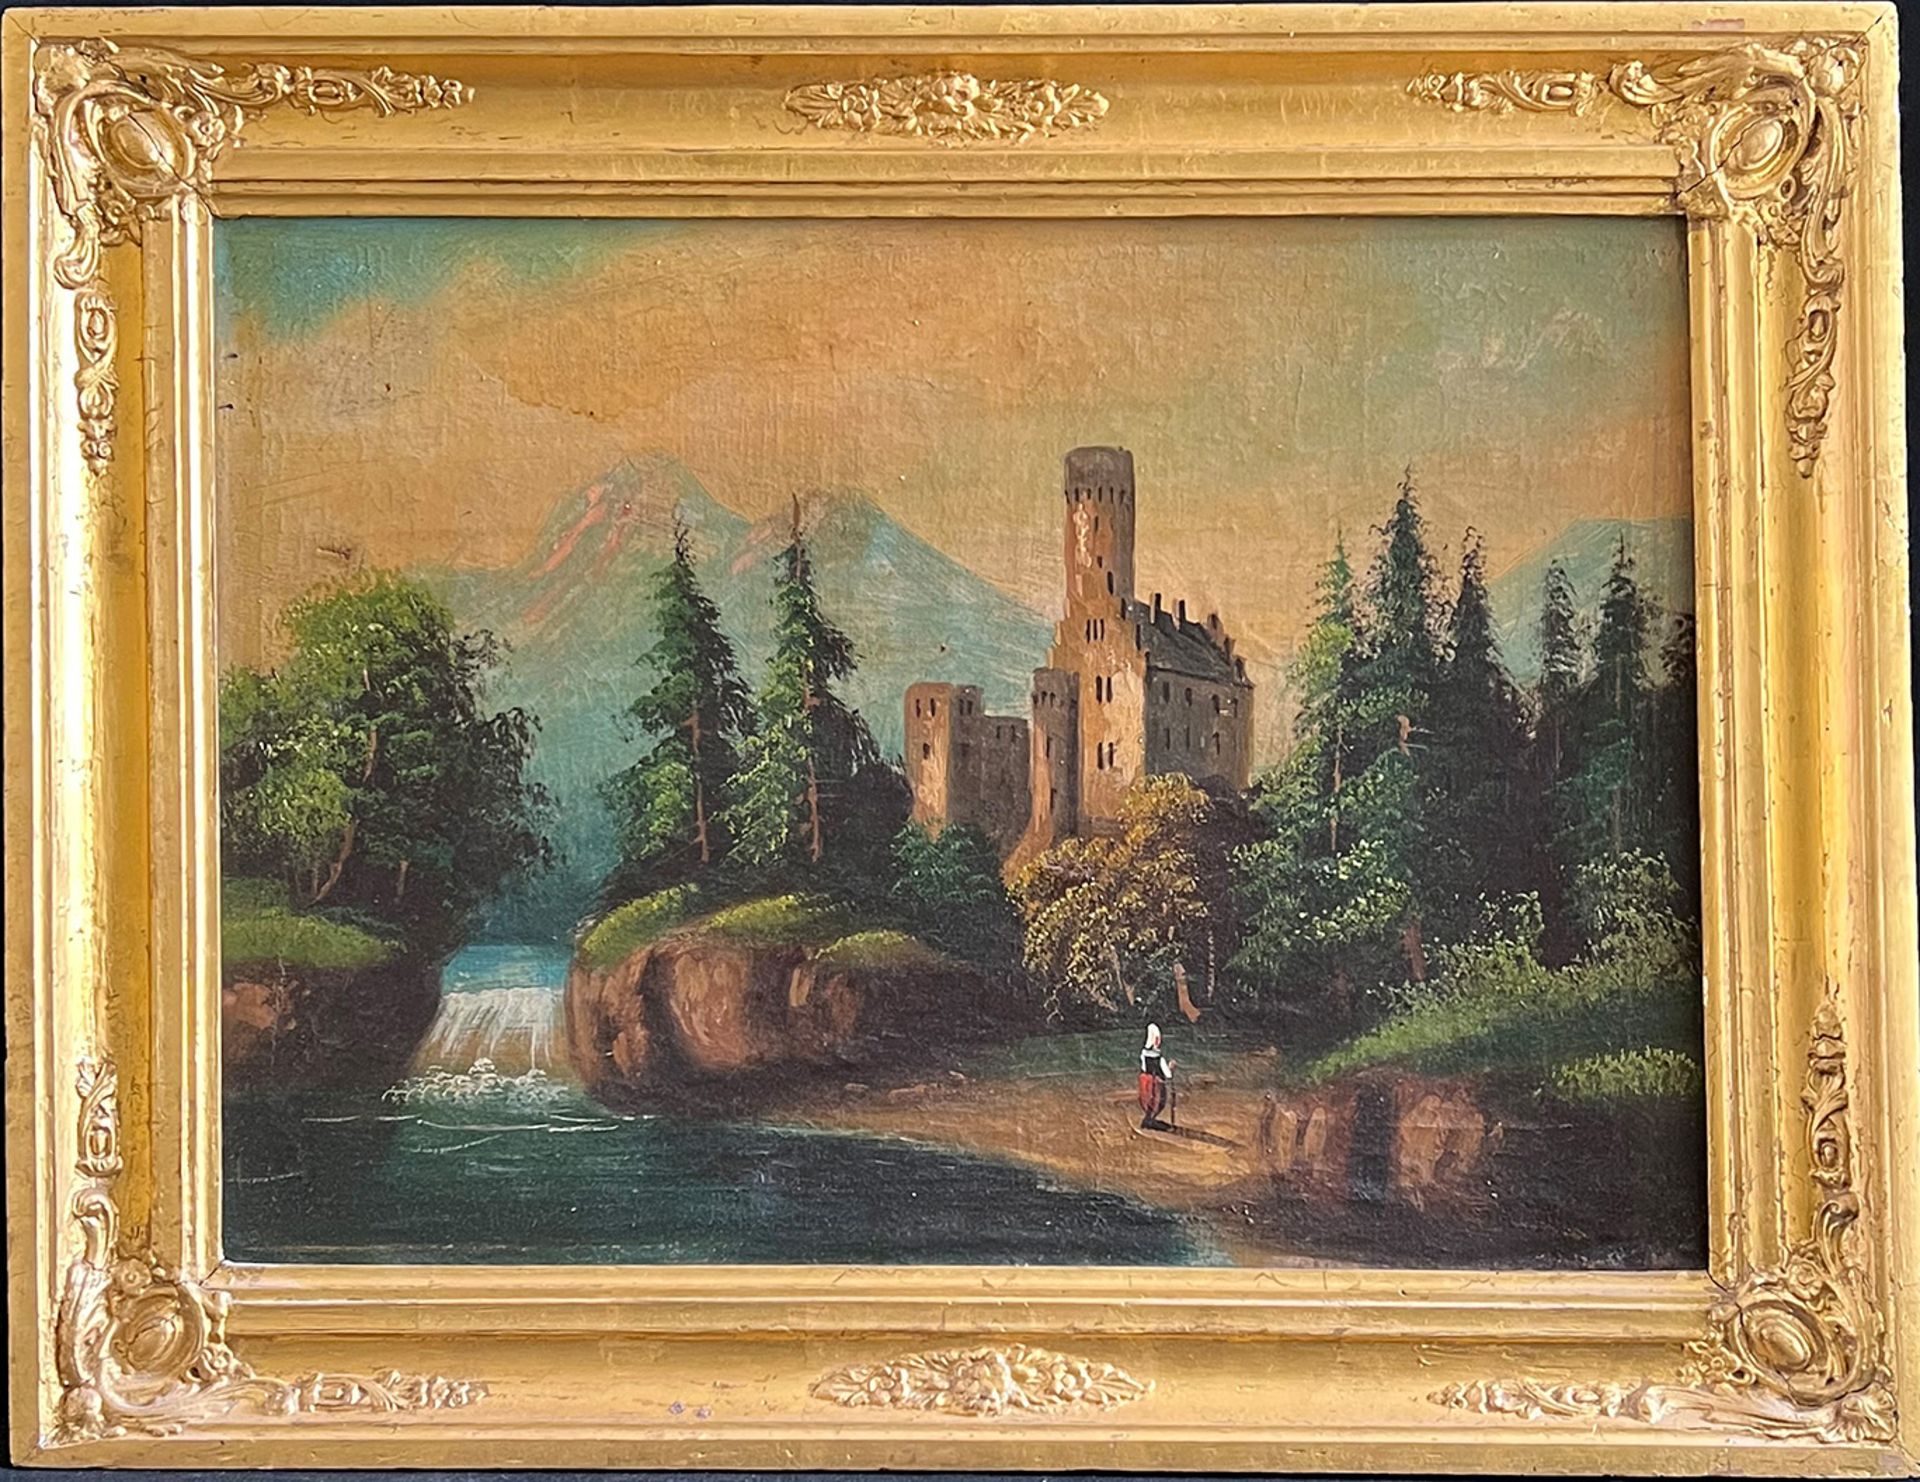 Unbekannter Künstler, 19. Jh., Romantik, Burgruine in einer waldigen Landschaft mit Fluß und